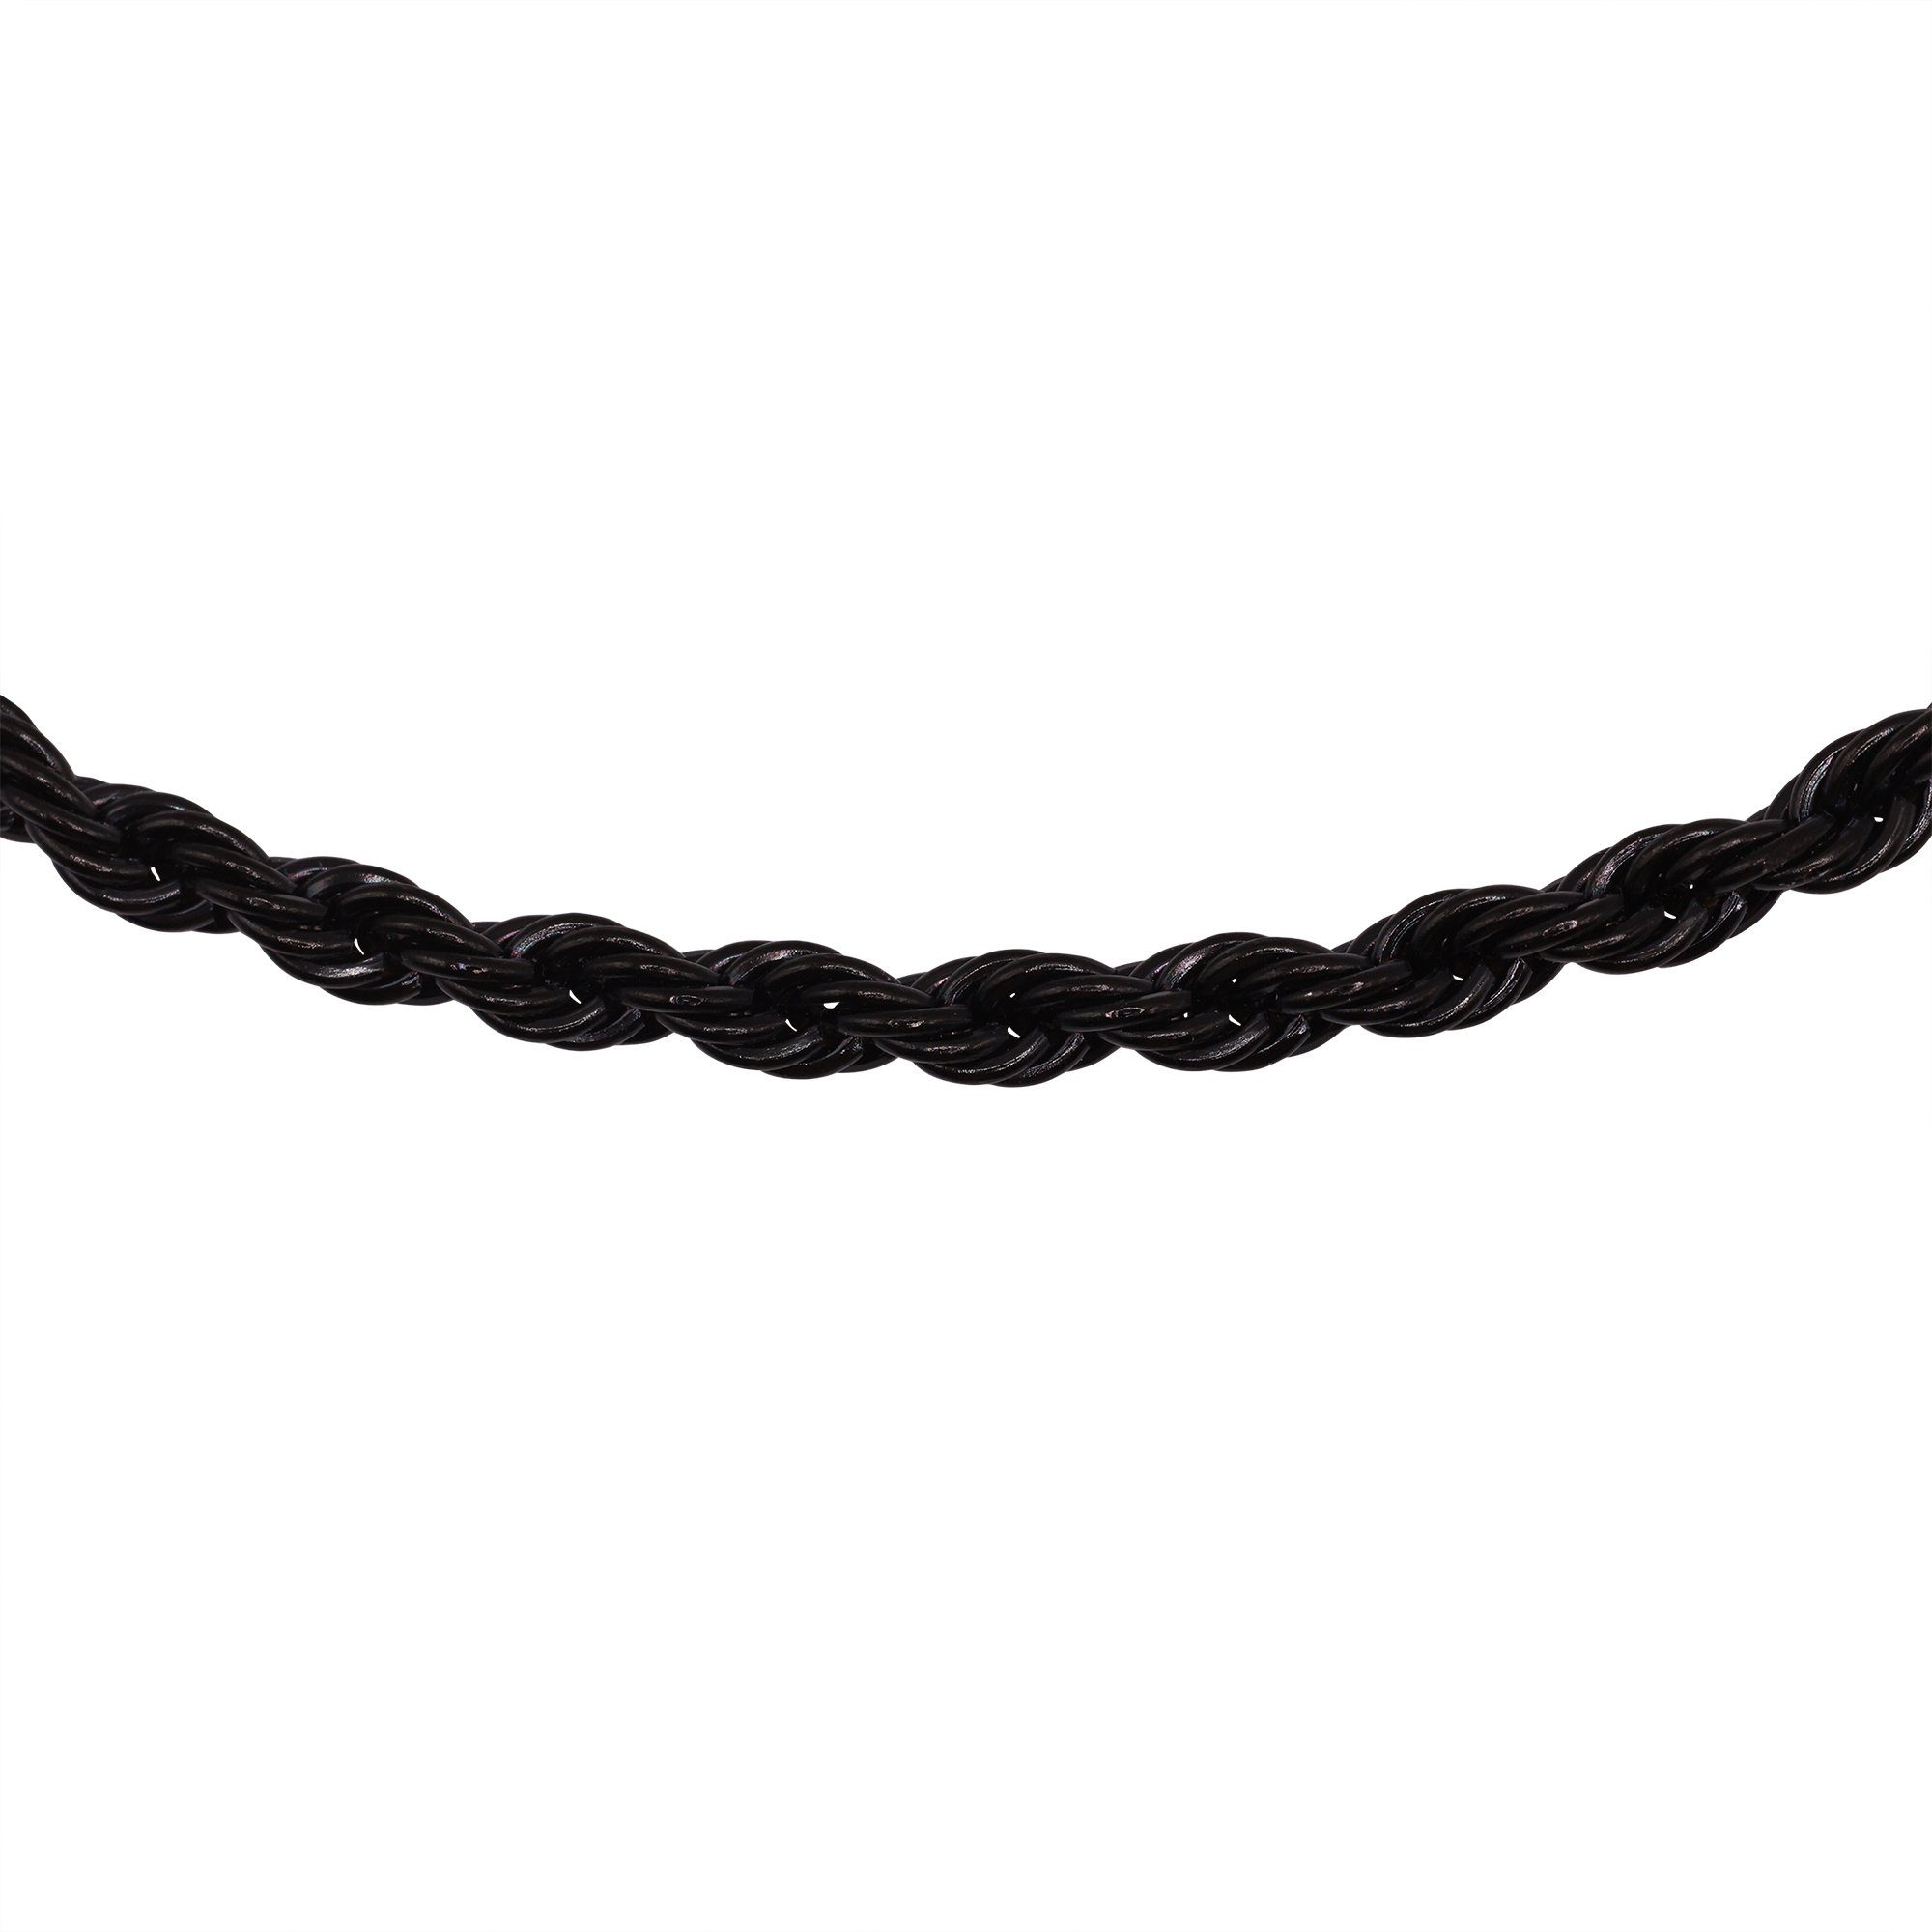 Heideman Collier Halskette schwarz ohne farben Männer Anhänger Theo (inkl. Geschenkverpackung),